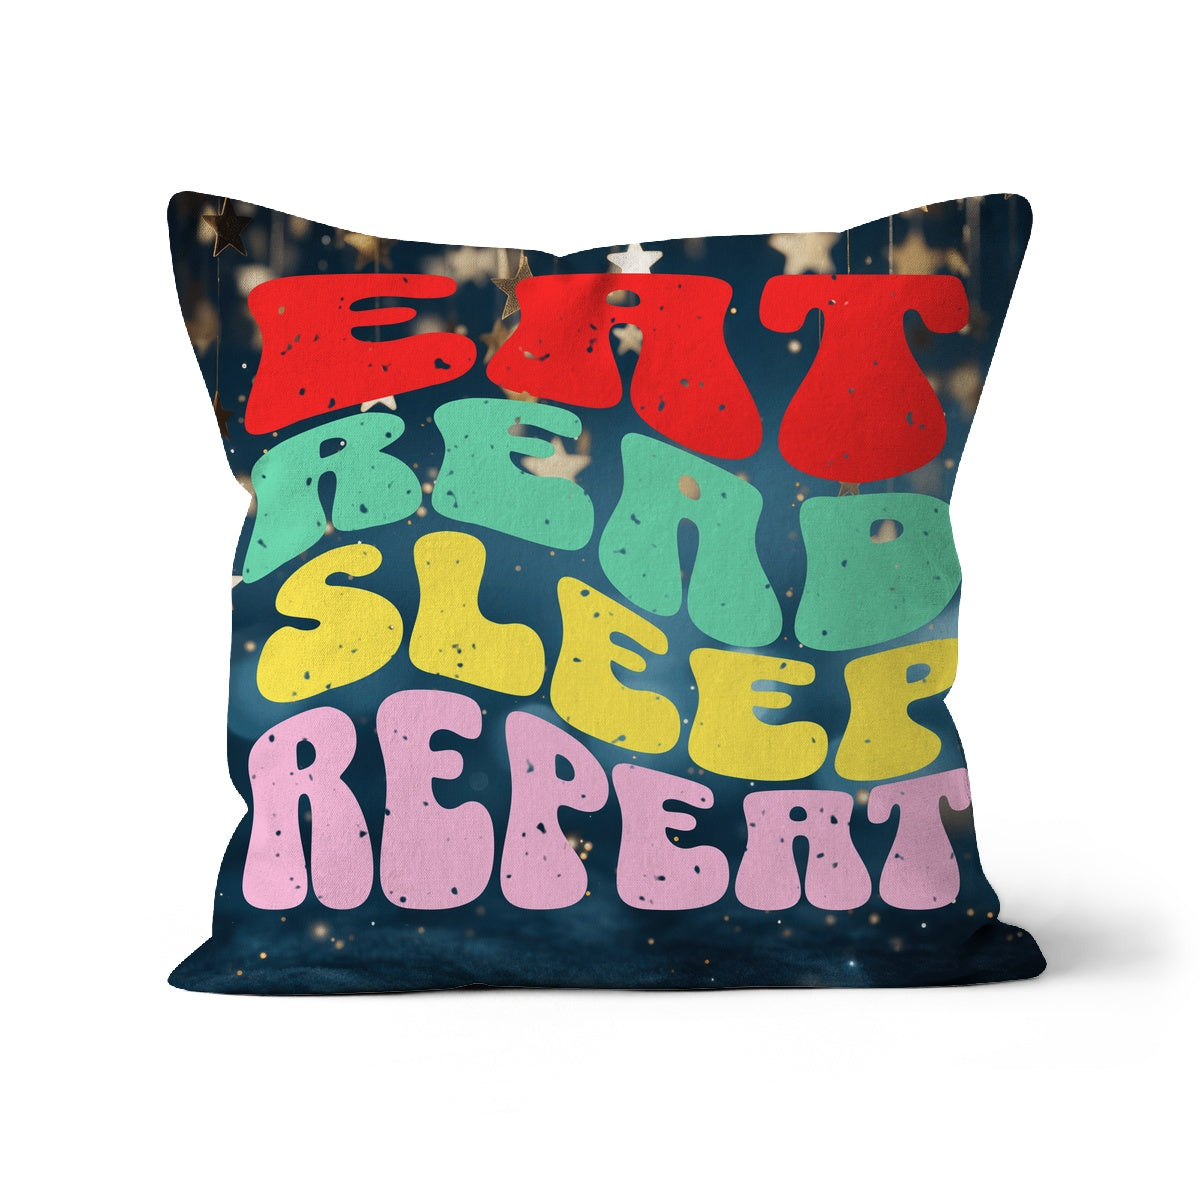 Eat Read Sleep Repeat Cushion